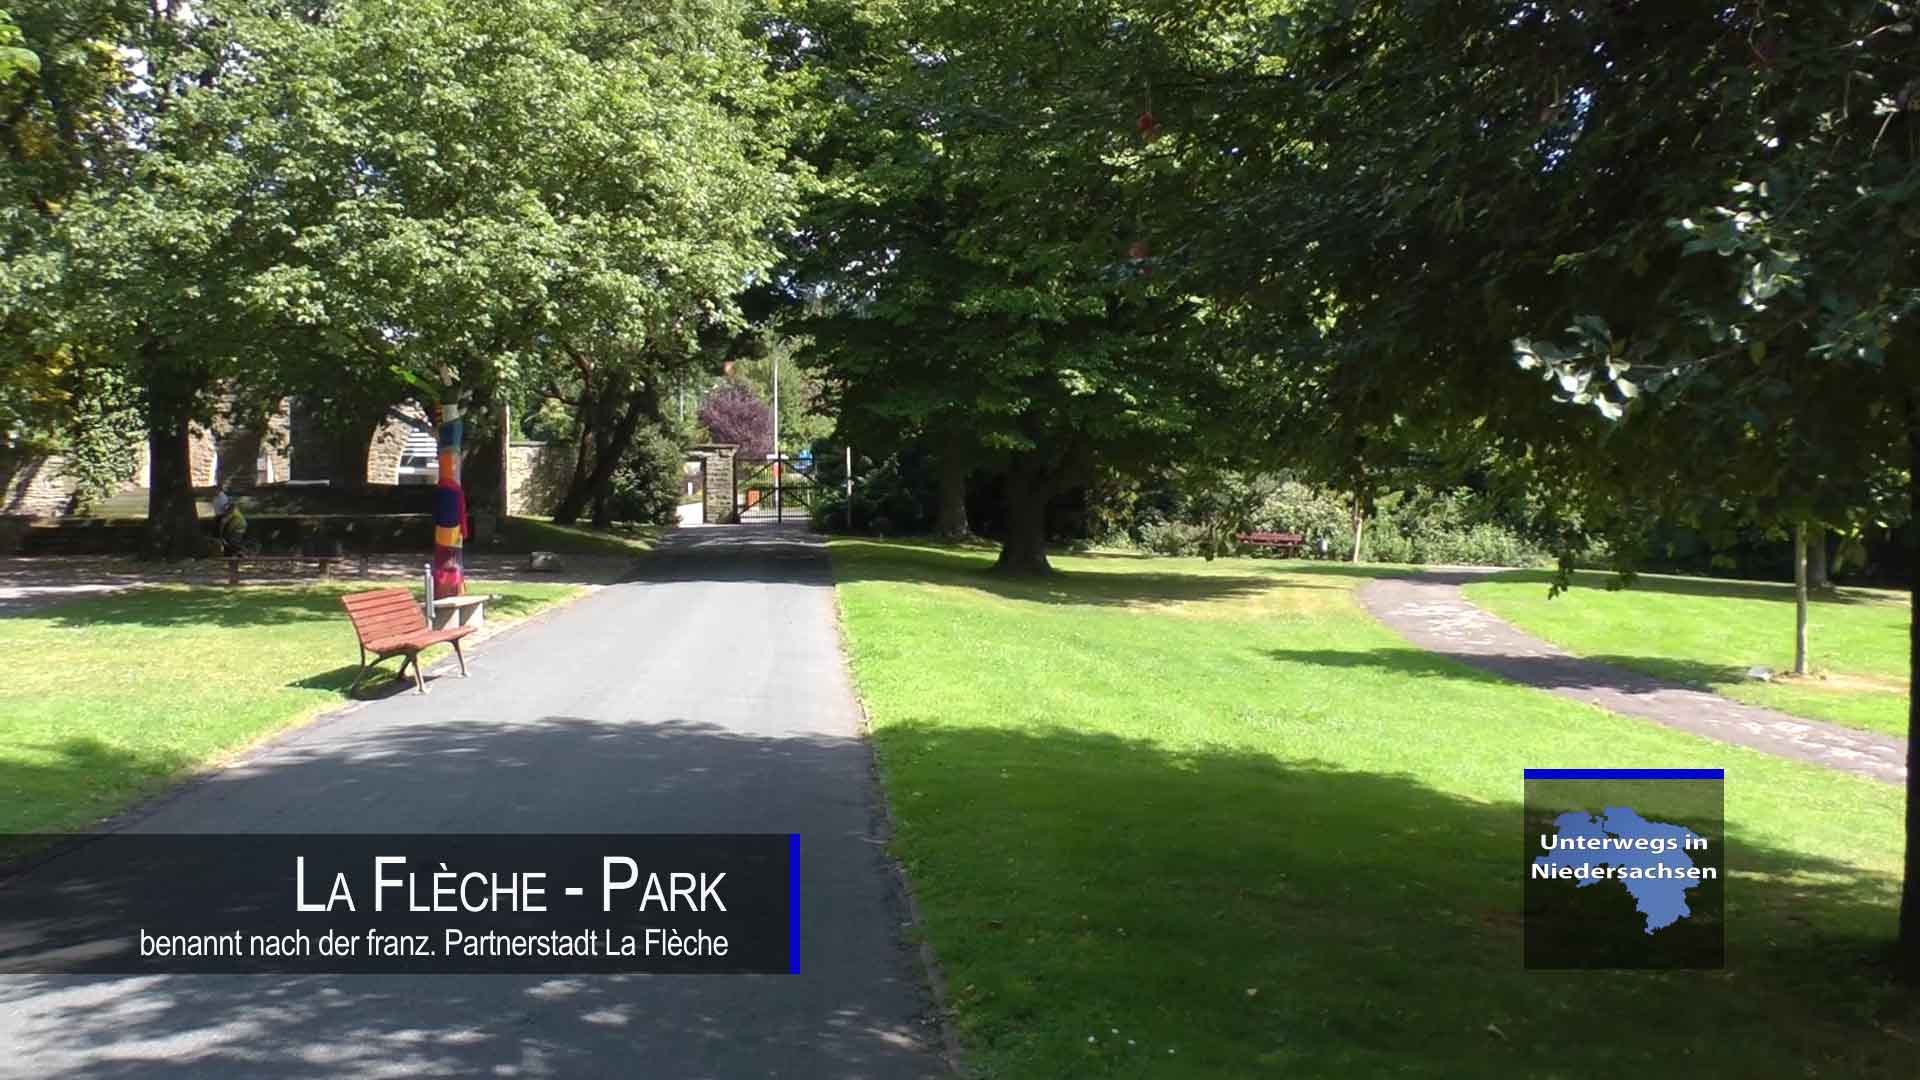 La Flèche - Park